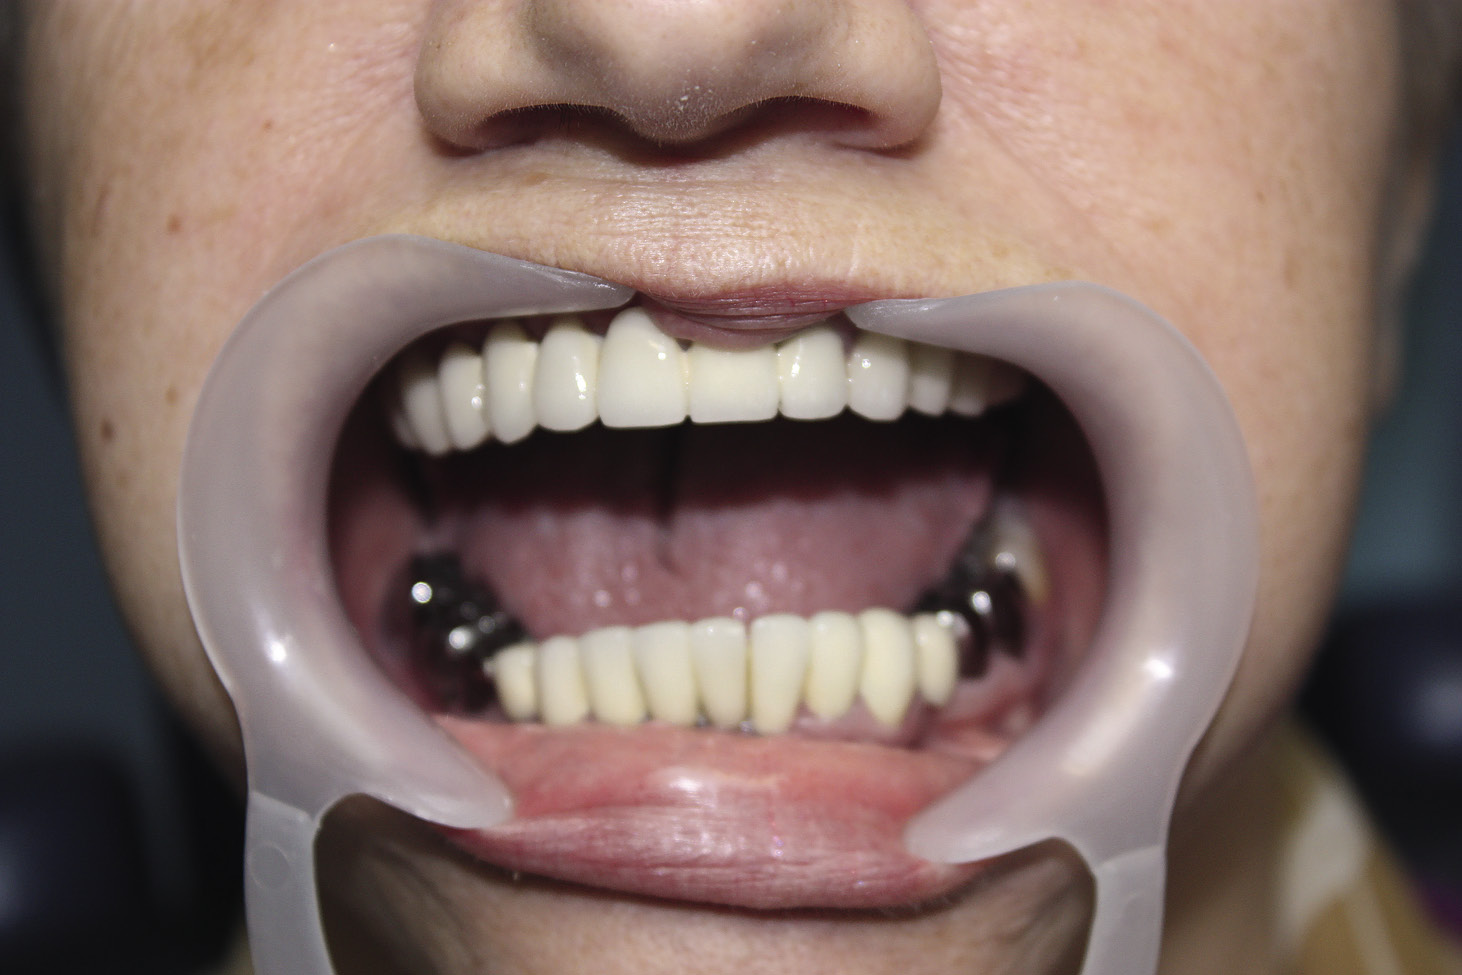 Рис. 2. Поражение зуба, затрагивающее эмалево-дентинную границу. Требуется инвазивное лечение.